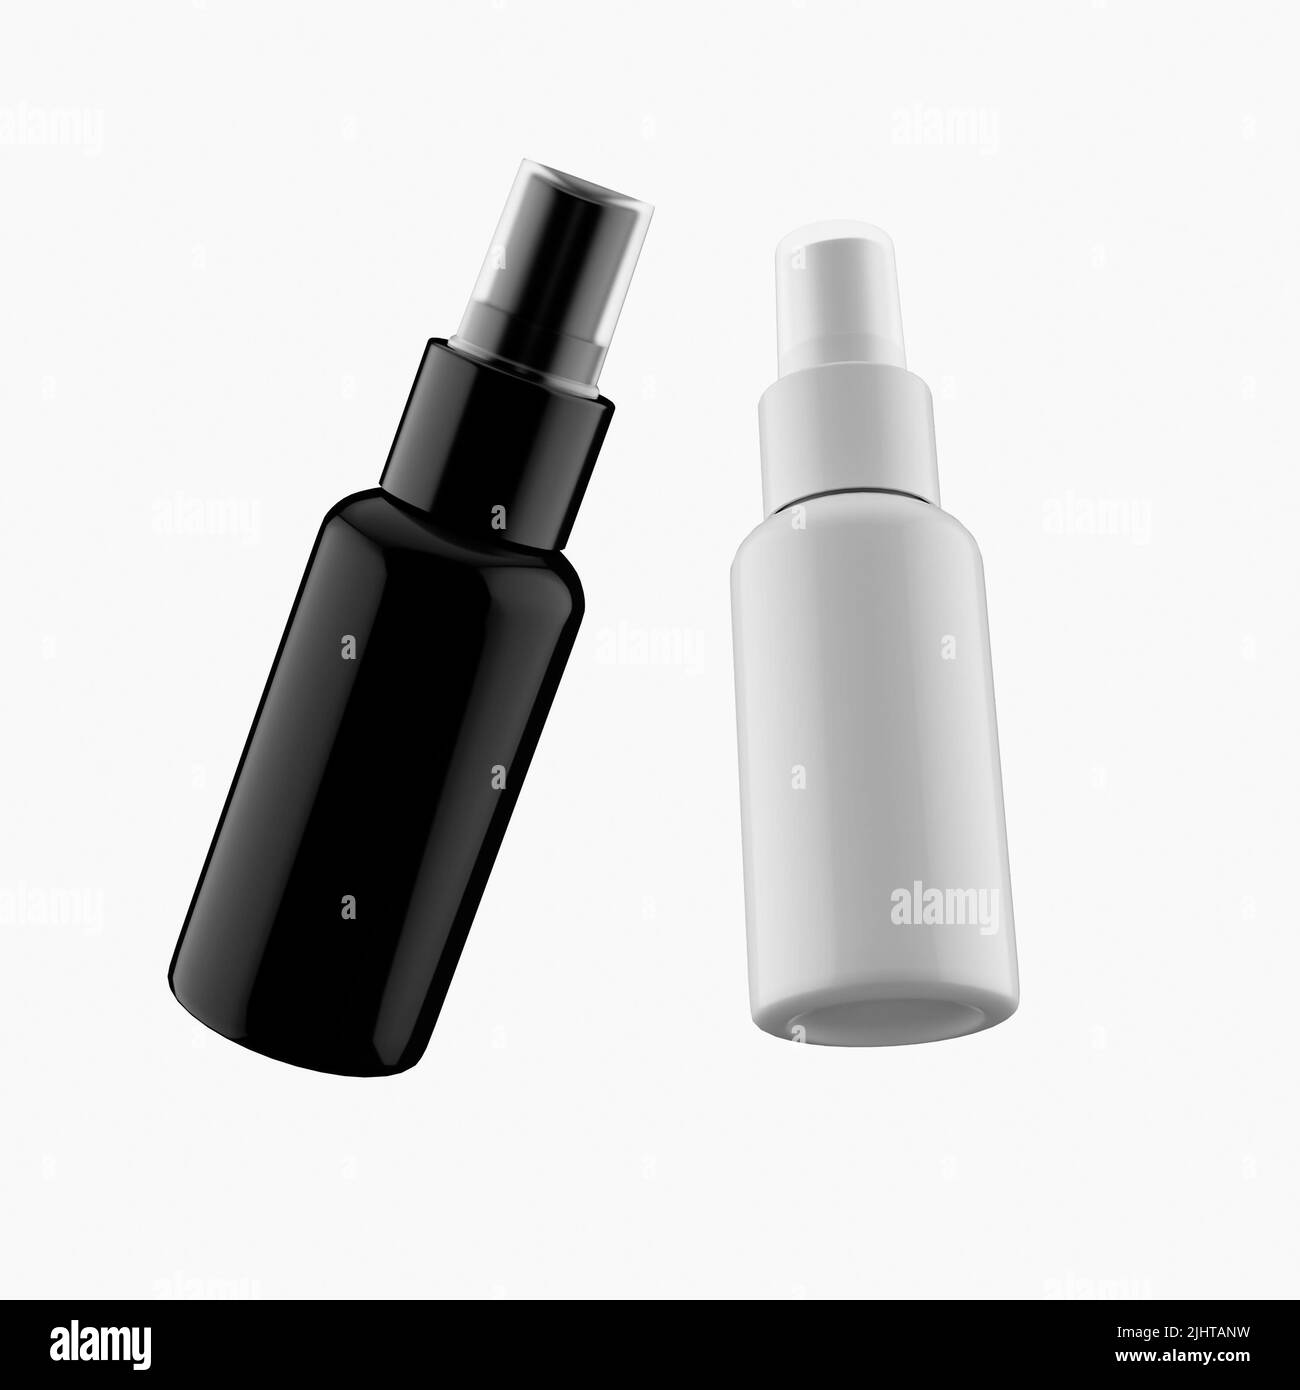 Eine schwarz-weiße, schwebende Deodorant-Flasche ist auf weißem Hintergrund nachgestellt Stockfoto